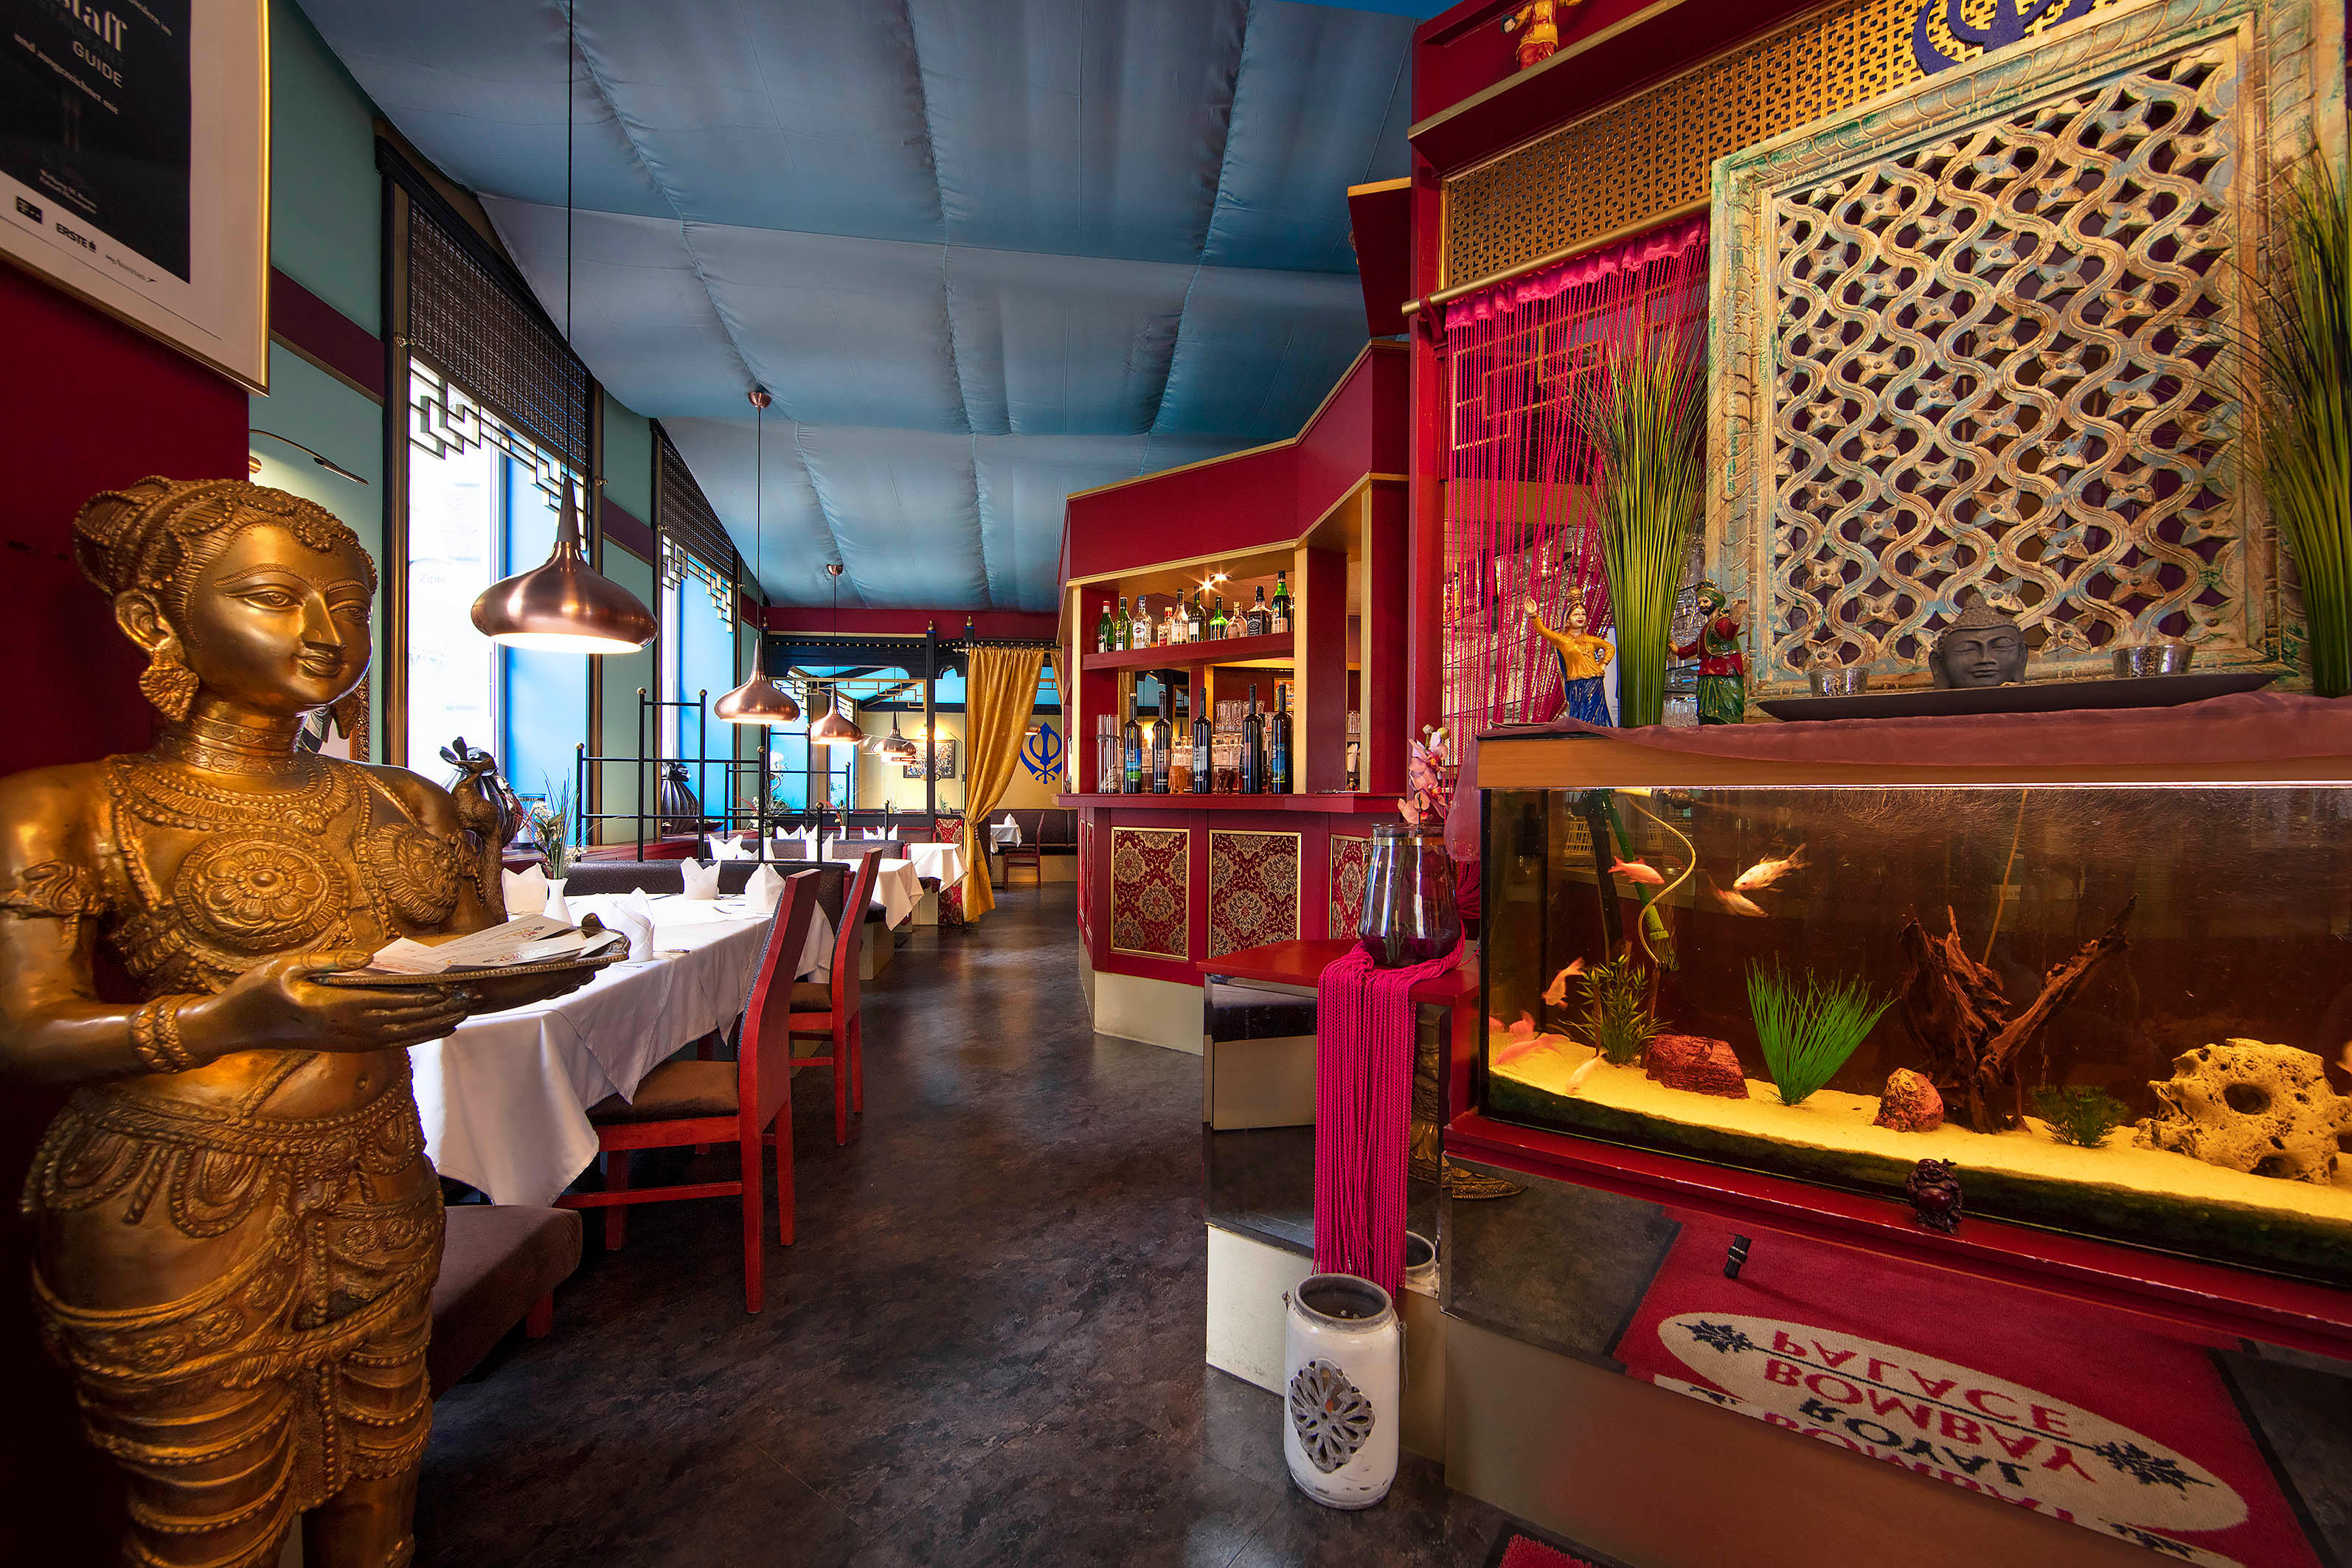 Bilder Royal Bombay Palace - Indisches Restaurant